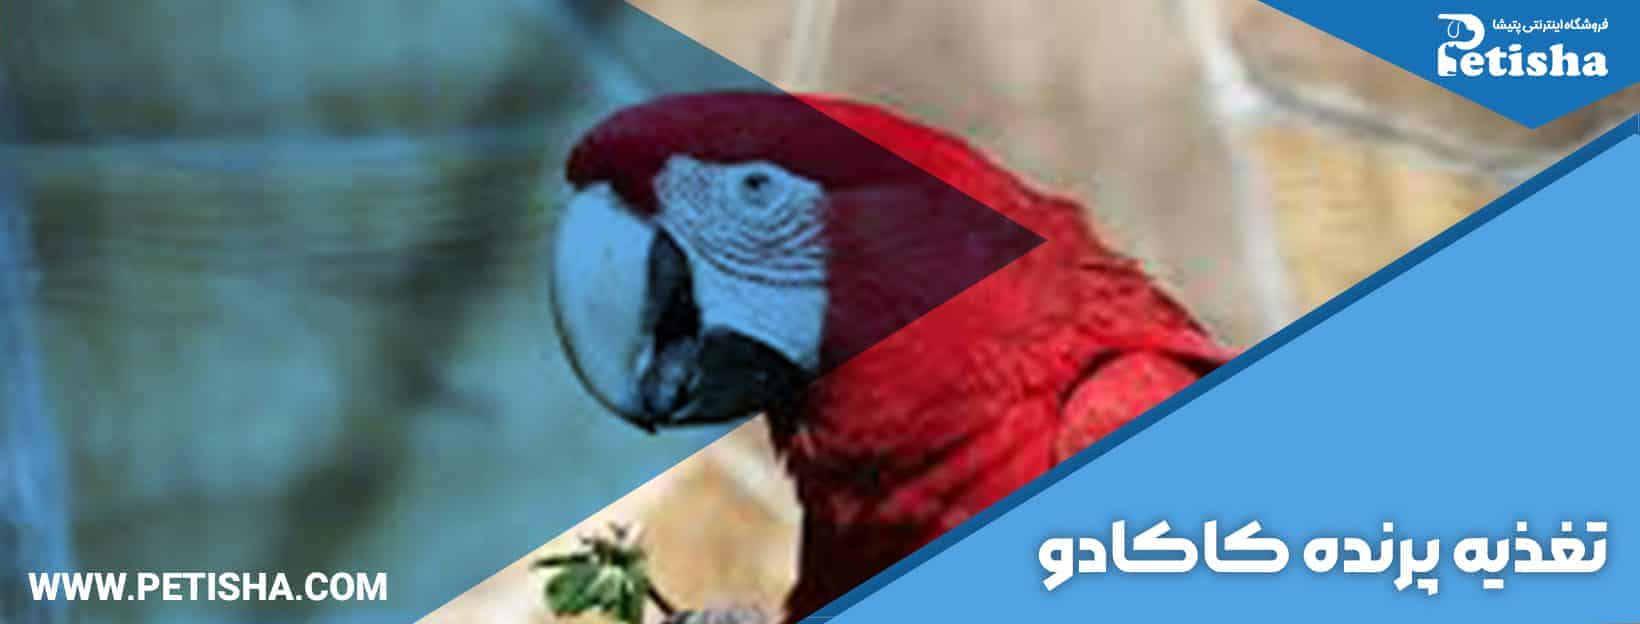 کاکادو | کاکادو، پرنده ای زیبا، دلنشین و تیزهوش